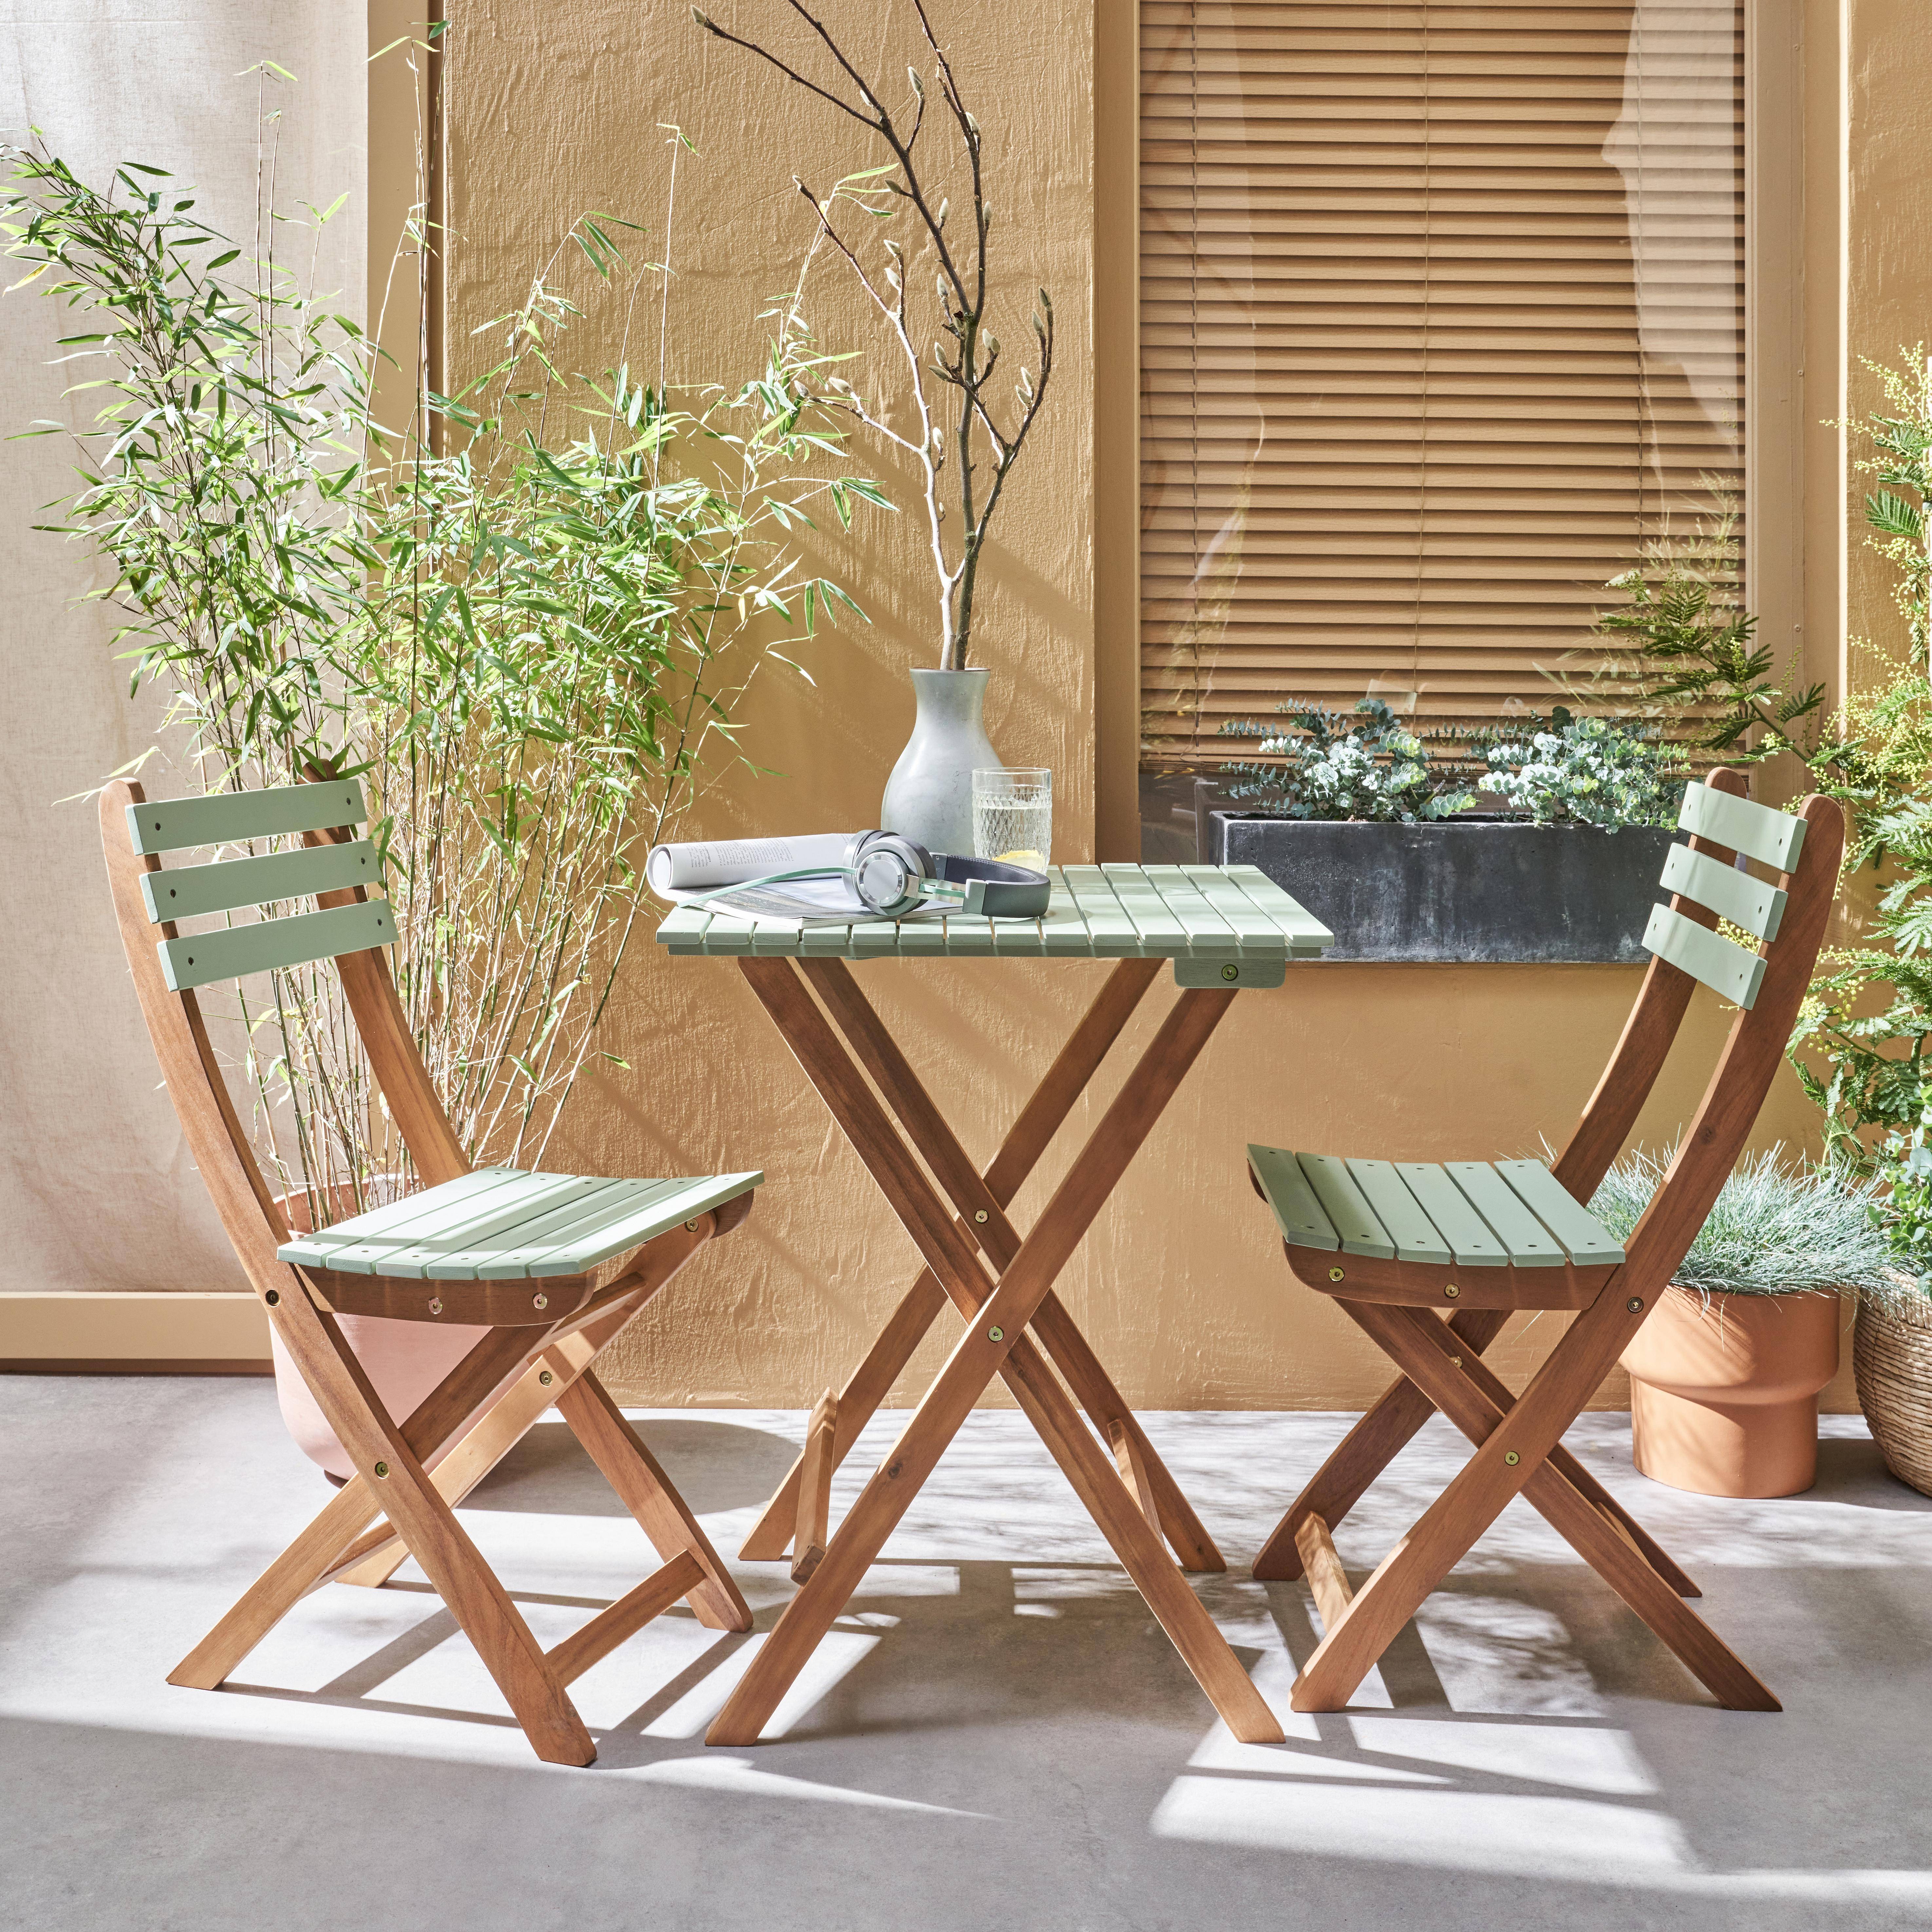 Conjunto de jardín de madera Bistro 60x60cm - Barcelona - verde grisáceo, mesa  plegable bicolor con 2 sillas plegables, acacia